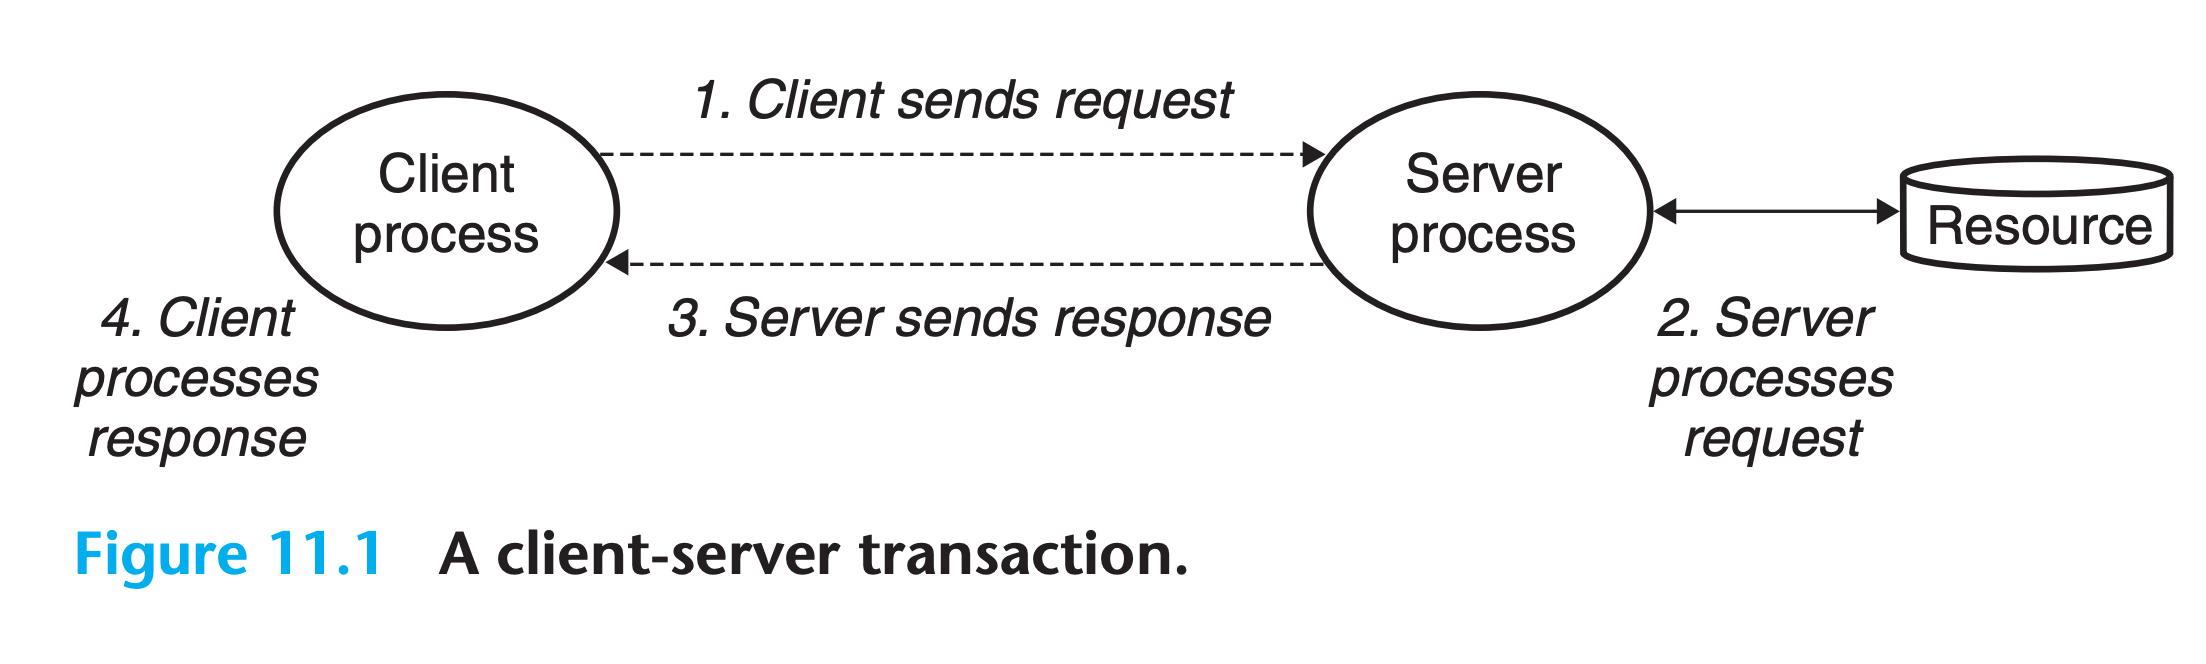 client-server transaction